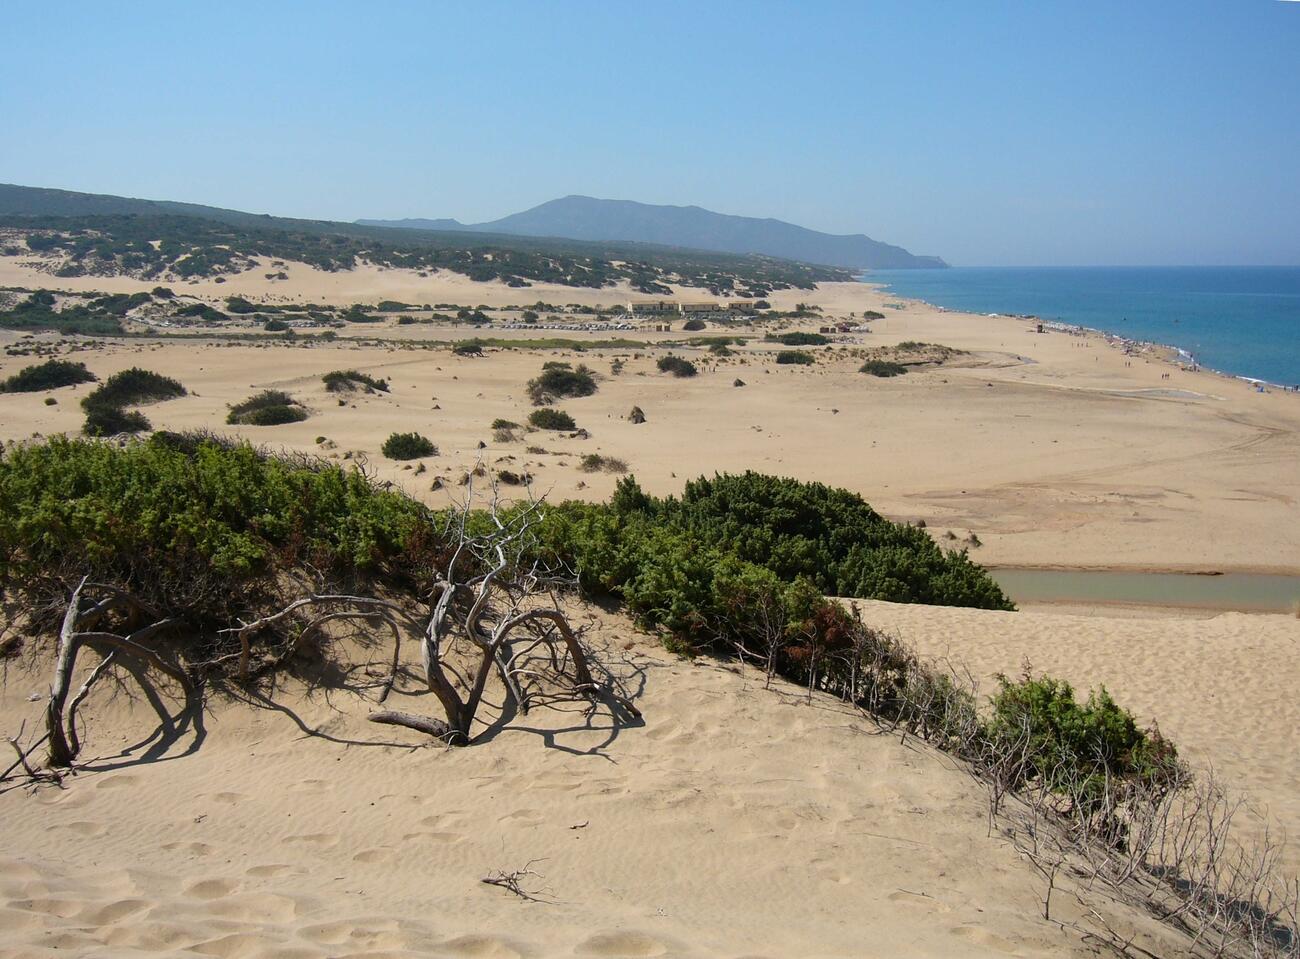 Piscinas an der Costa Verde von Sardinien